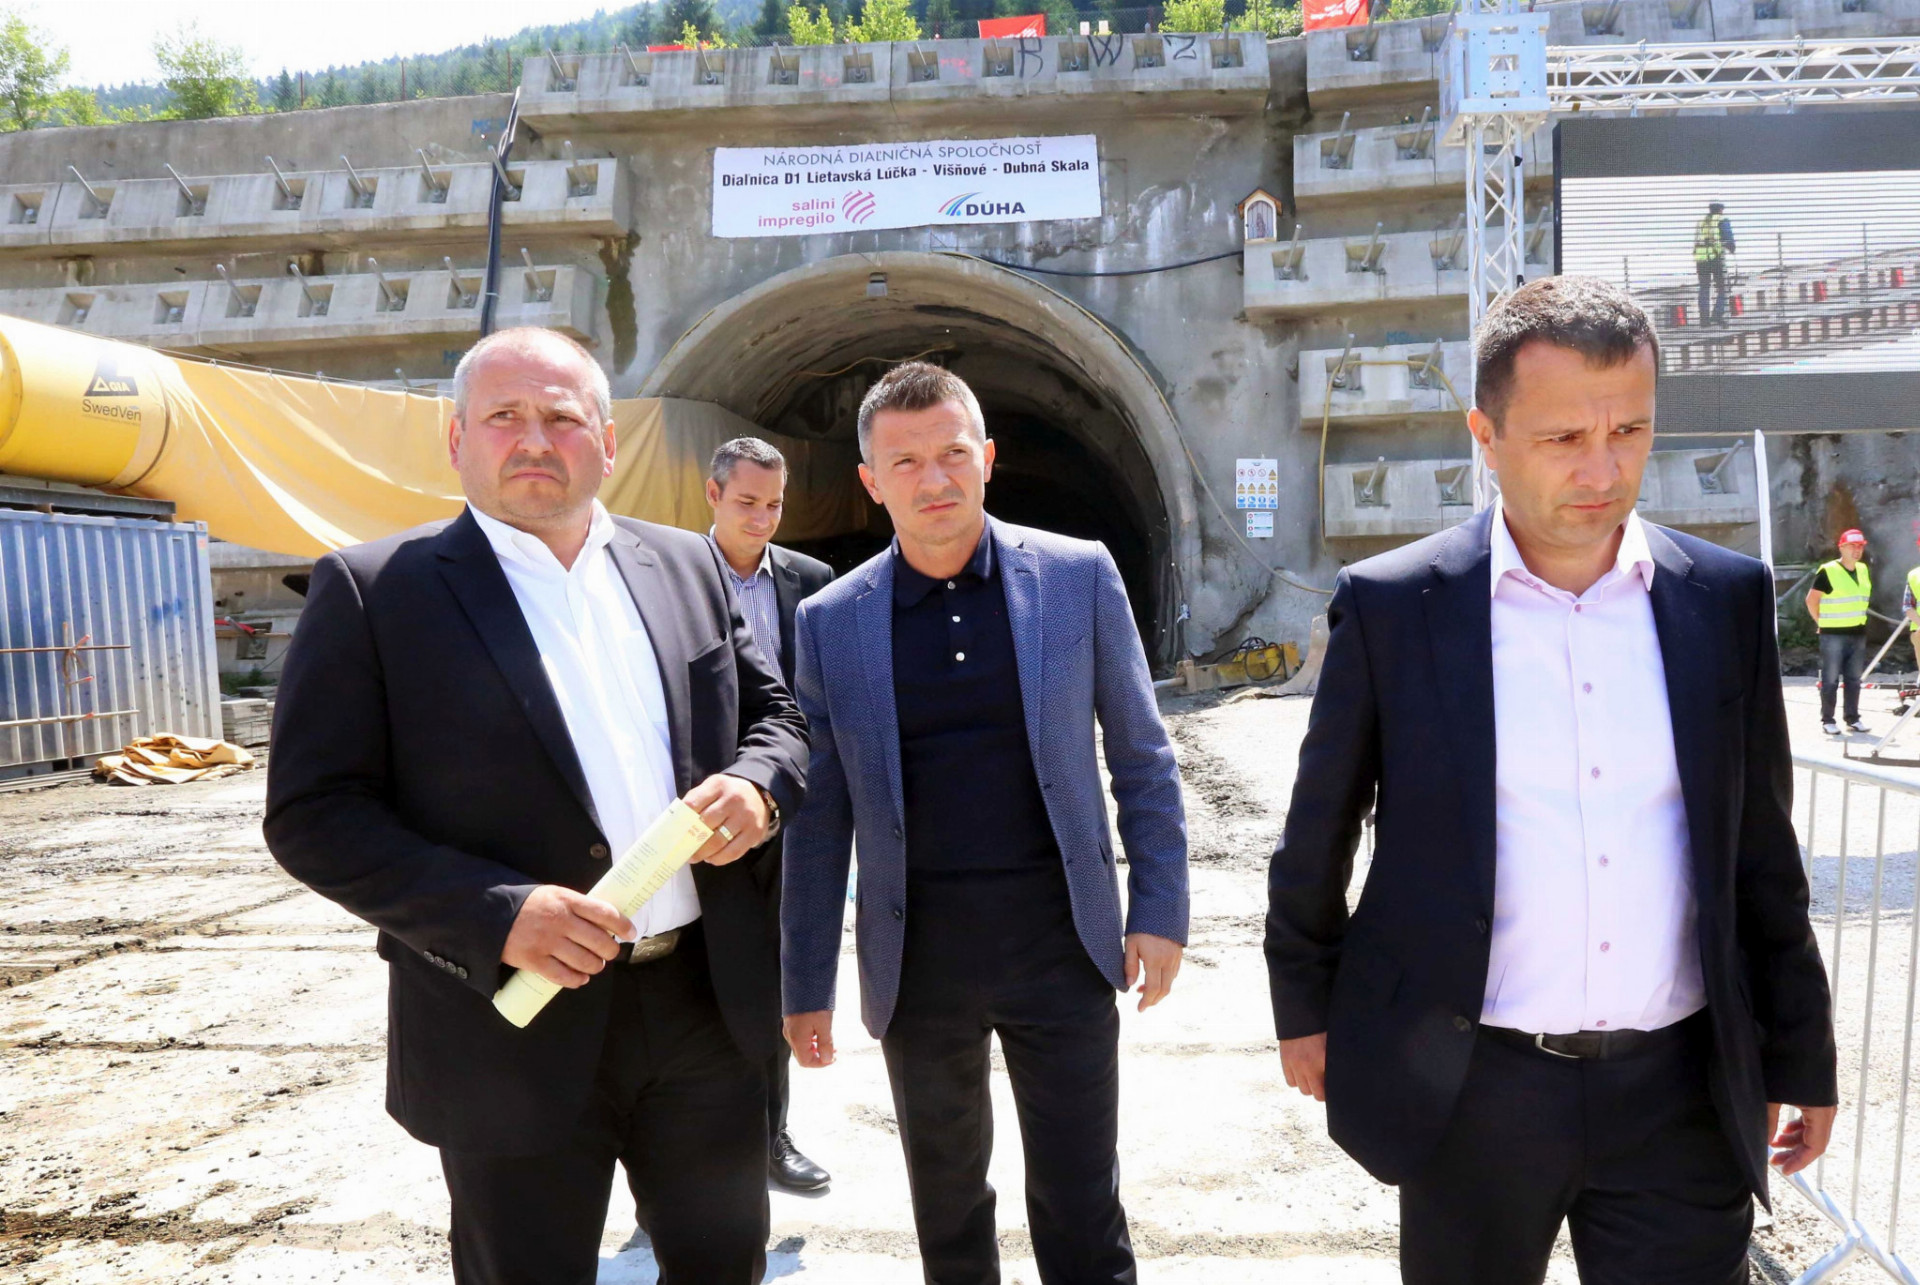 Žilinský primátor Igor Choma (vľavo), vtedajší minister dopravy Ján Počiatek a šéf NDS Milan Gajdoš pri tuneli Višňové na začiatku
razby.